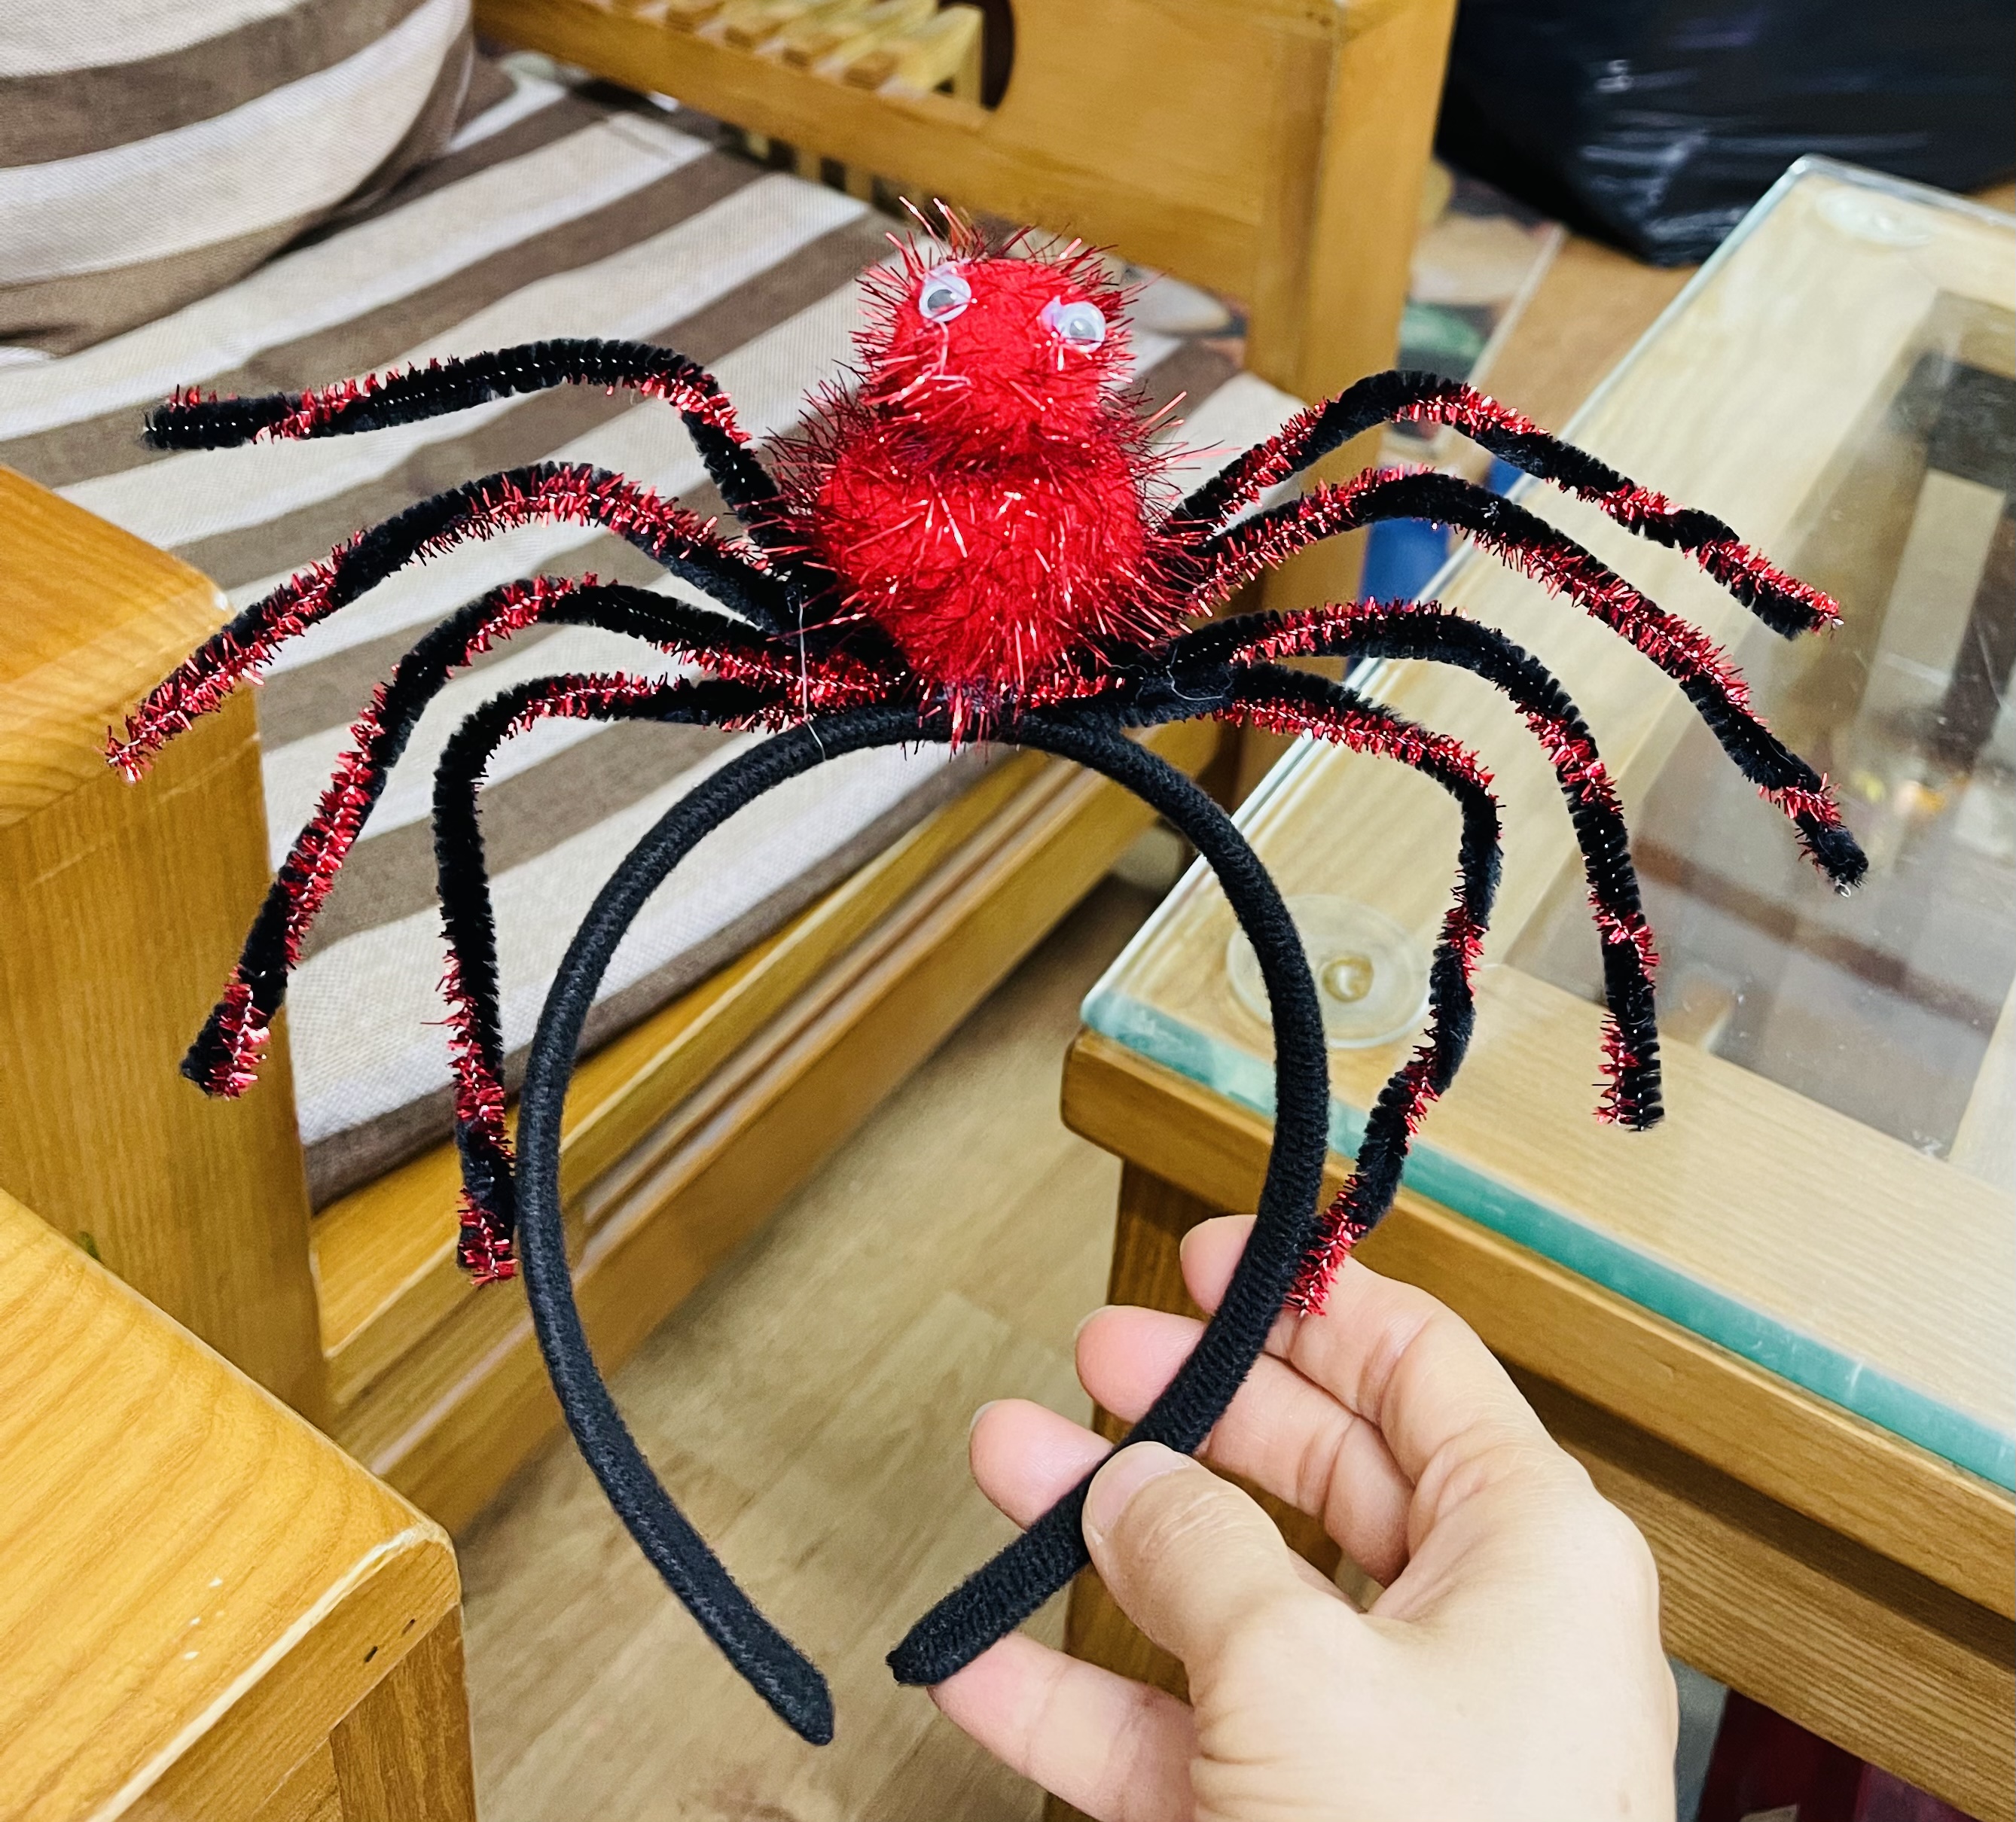 Bờm nhện hoá trang halloween/ bờm bóc chơi halloween hình nhện